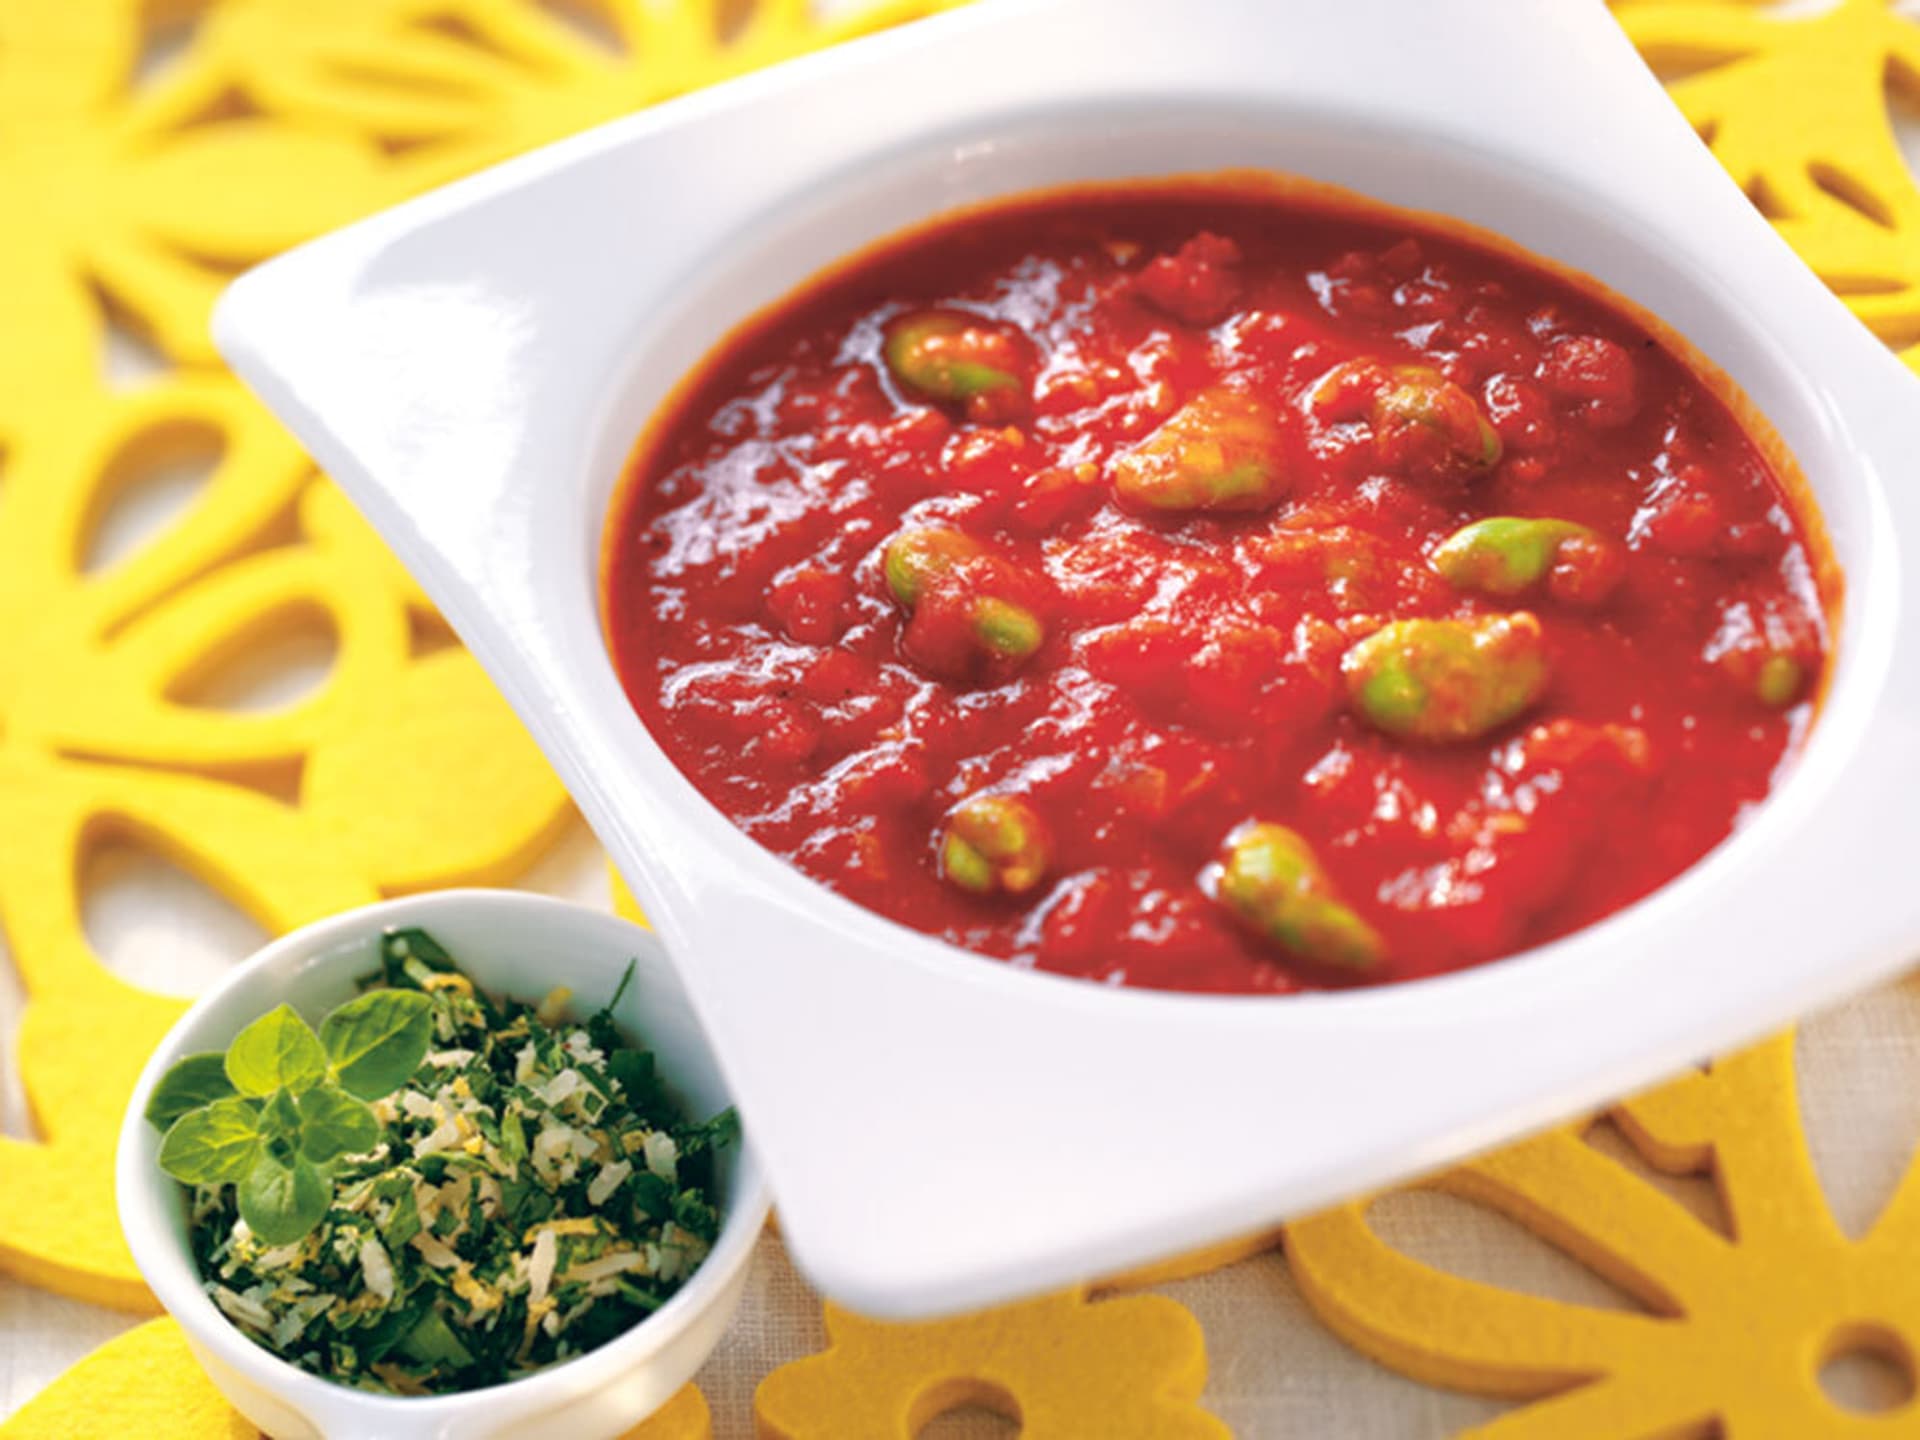 Tomaten-Bohnensuppe mit Gremolata